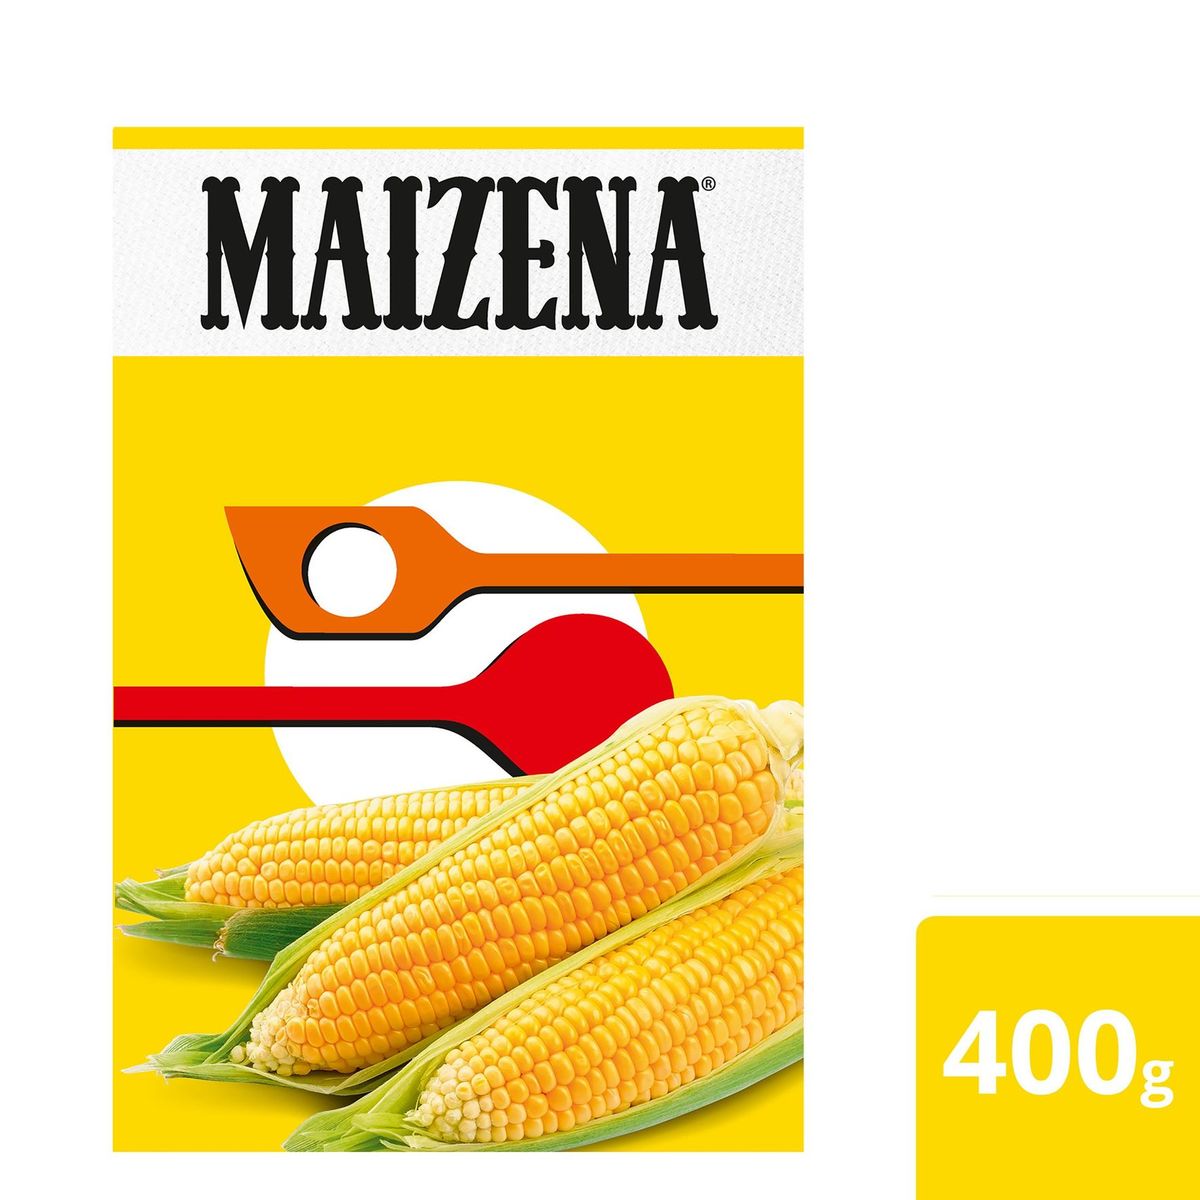 Maizena Plus Bindmiddel Maiszetmeel, voor Uw Sauzen en Gebak 400 g